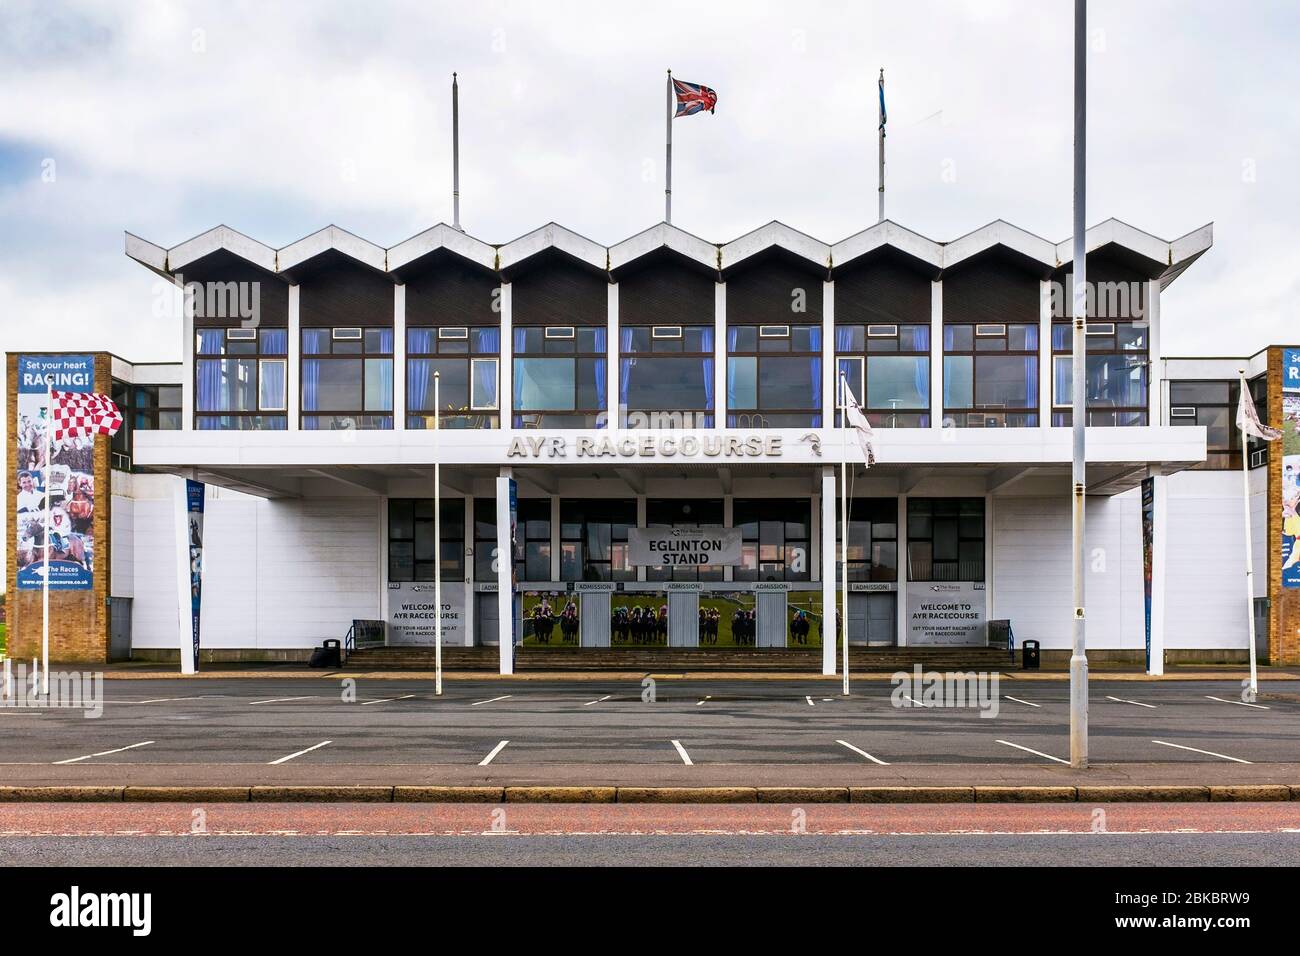 Eglinton Stand, entrée publique, à Ayr Racecourse, Ayr, Ayrshire, Écosse, Royaume-Uni Banque D'Images